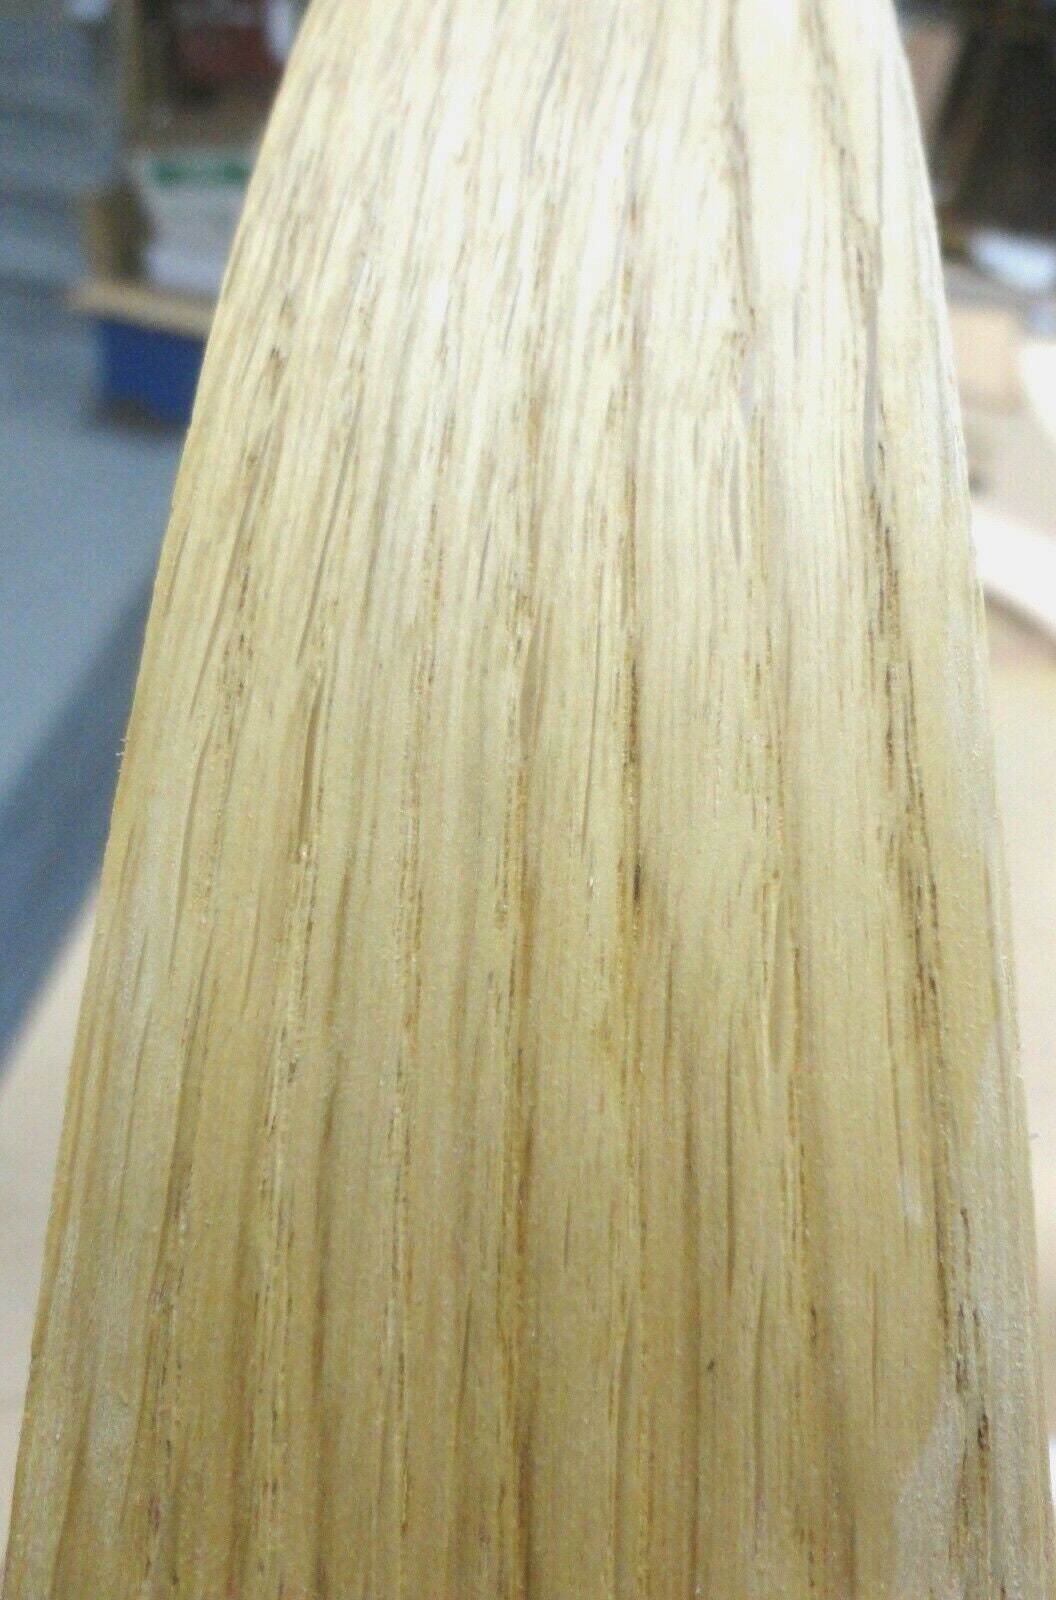 Borde de chapa de madera de roble blanco de 1 mm de espesor, rollo de 3/4 x  120 x 0,040 de espesor -  México